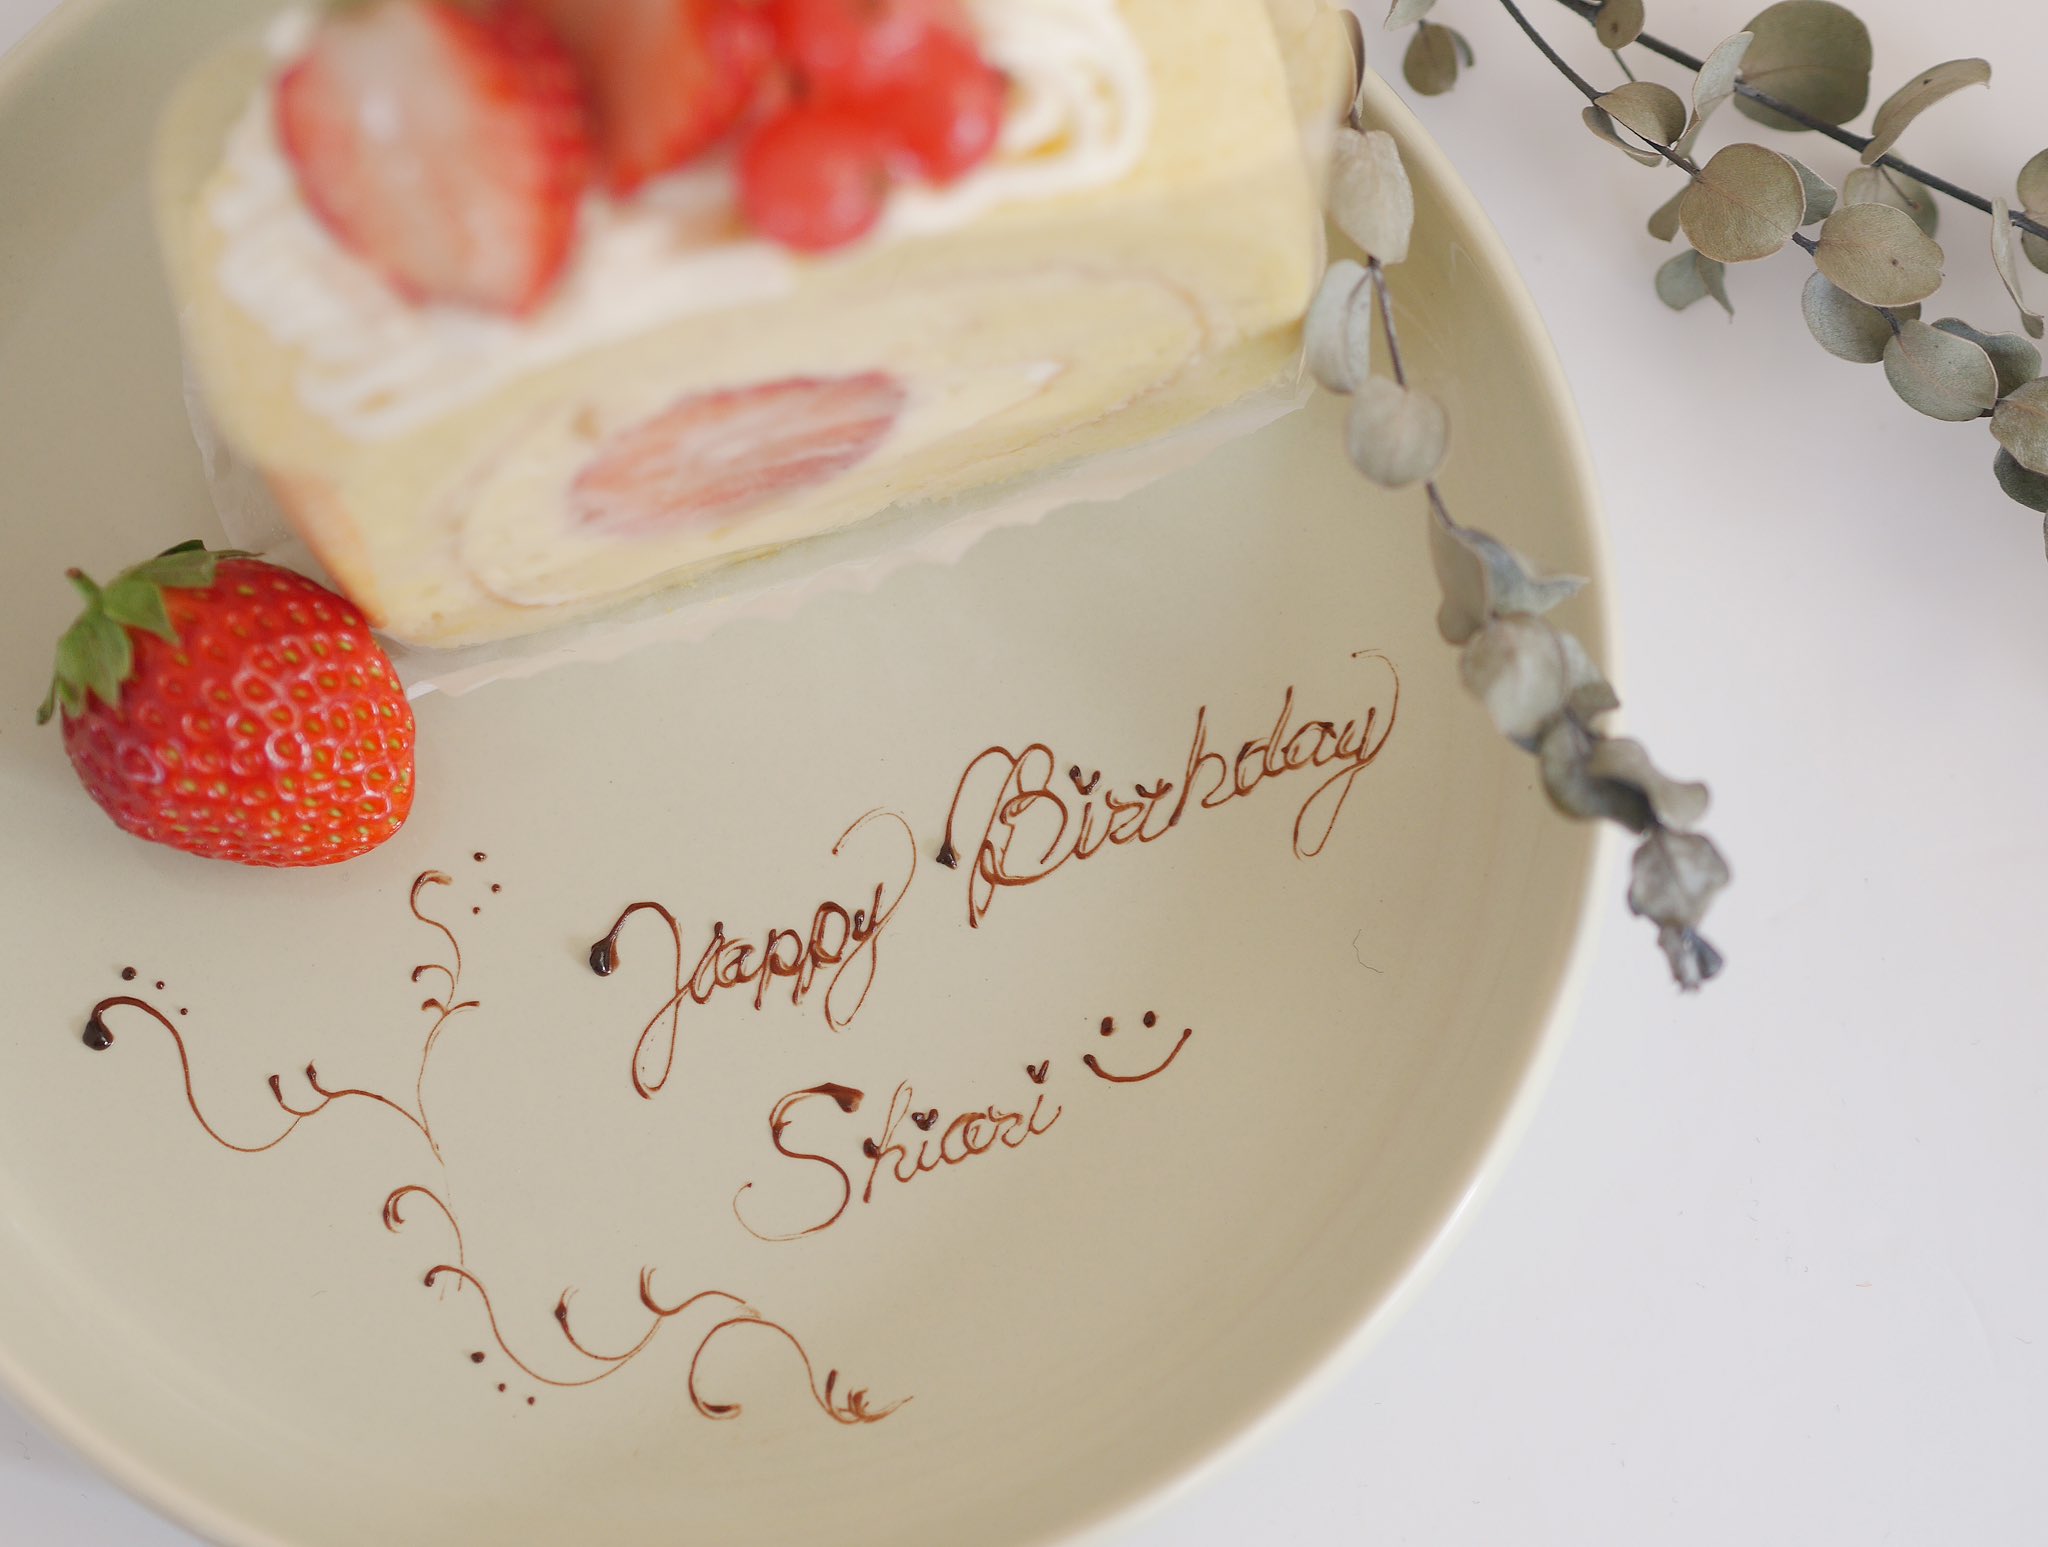 S H I O R I على تويتر ロールケーキ作ったから写真撮りたくて お皿思いつかなくて 全然関係無いのにhappy Birthday書きました 私の誕生日は3月です お菓子作り ロールケーキ Happybirthday パイピング